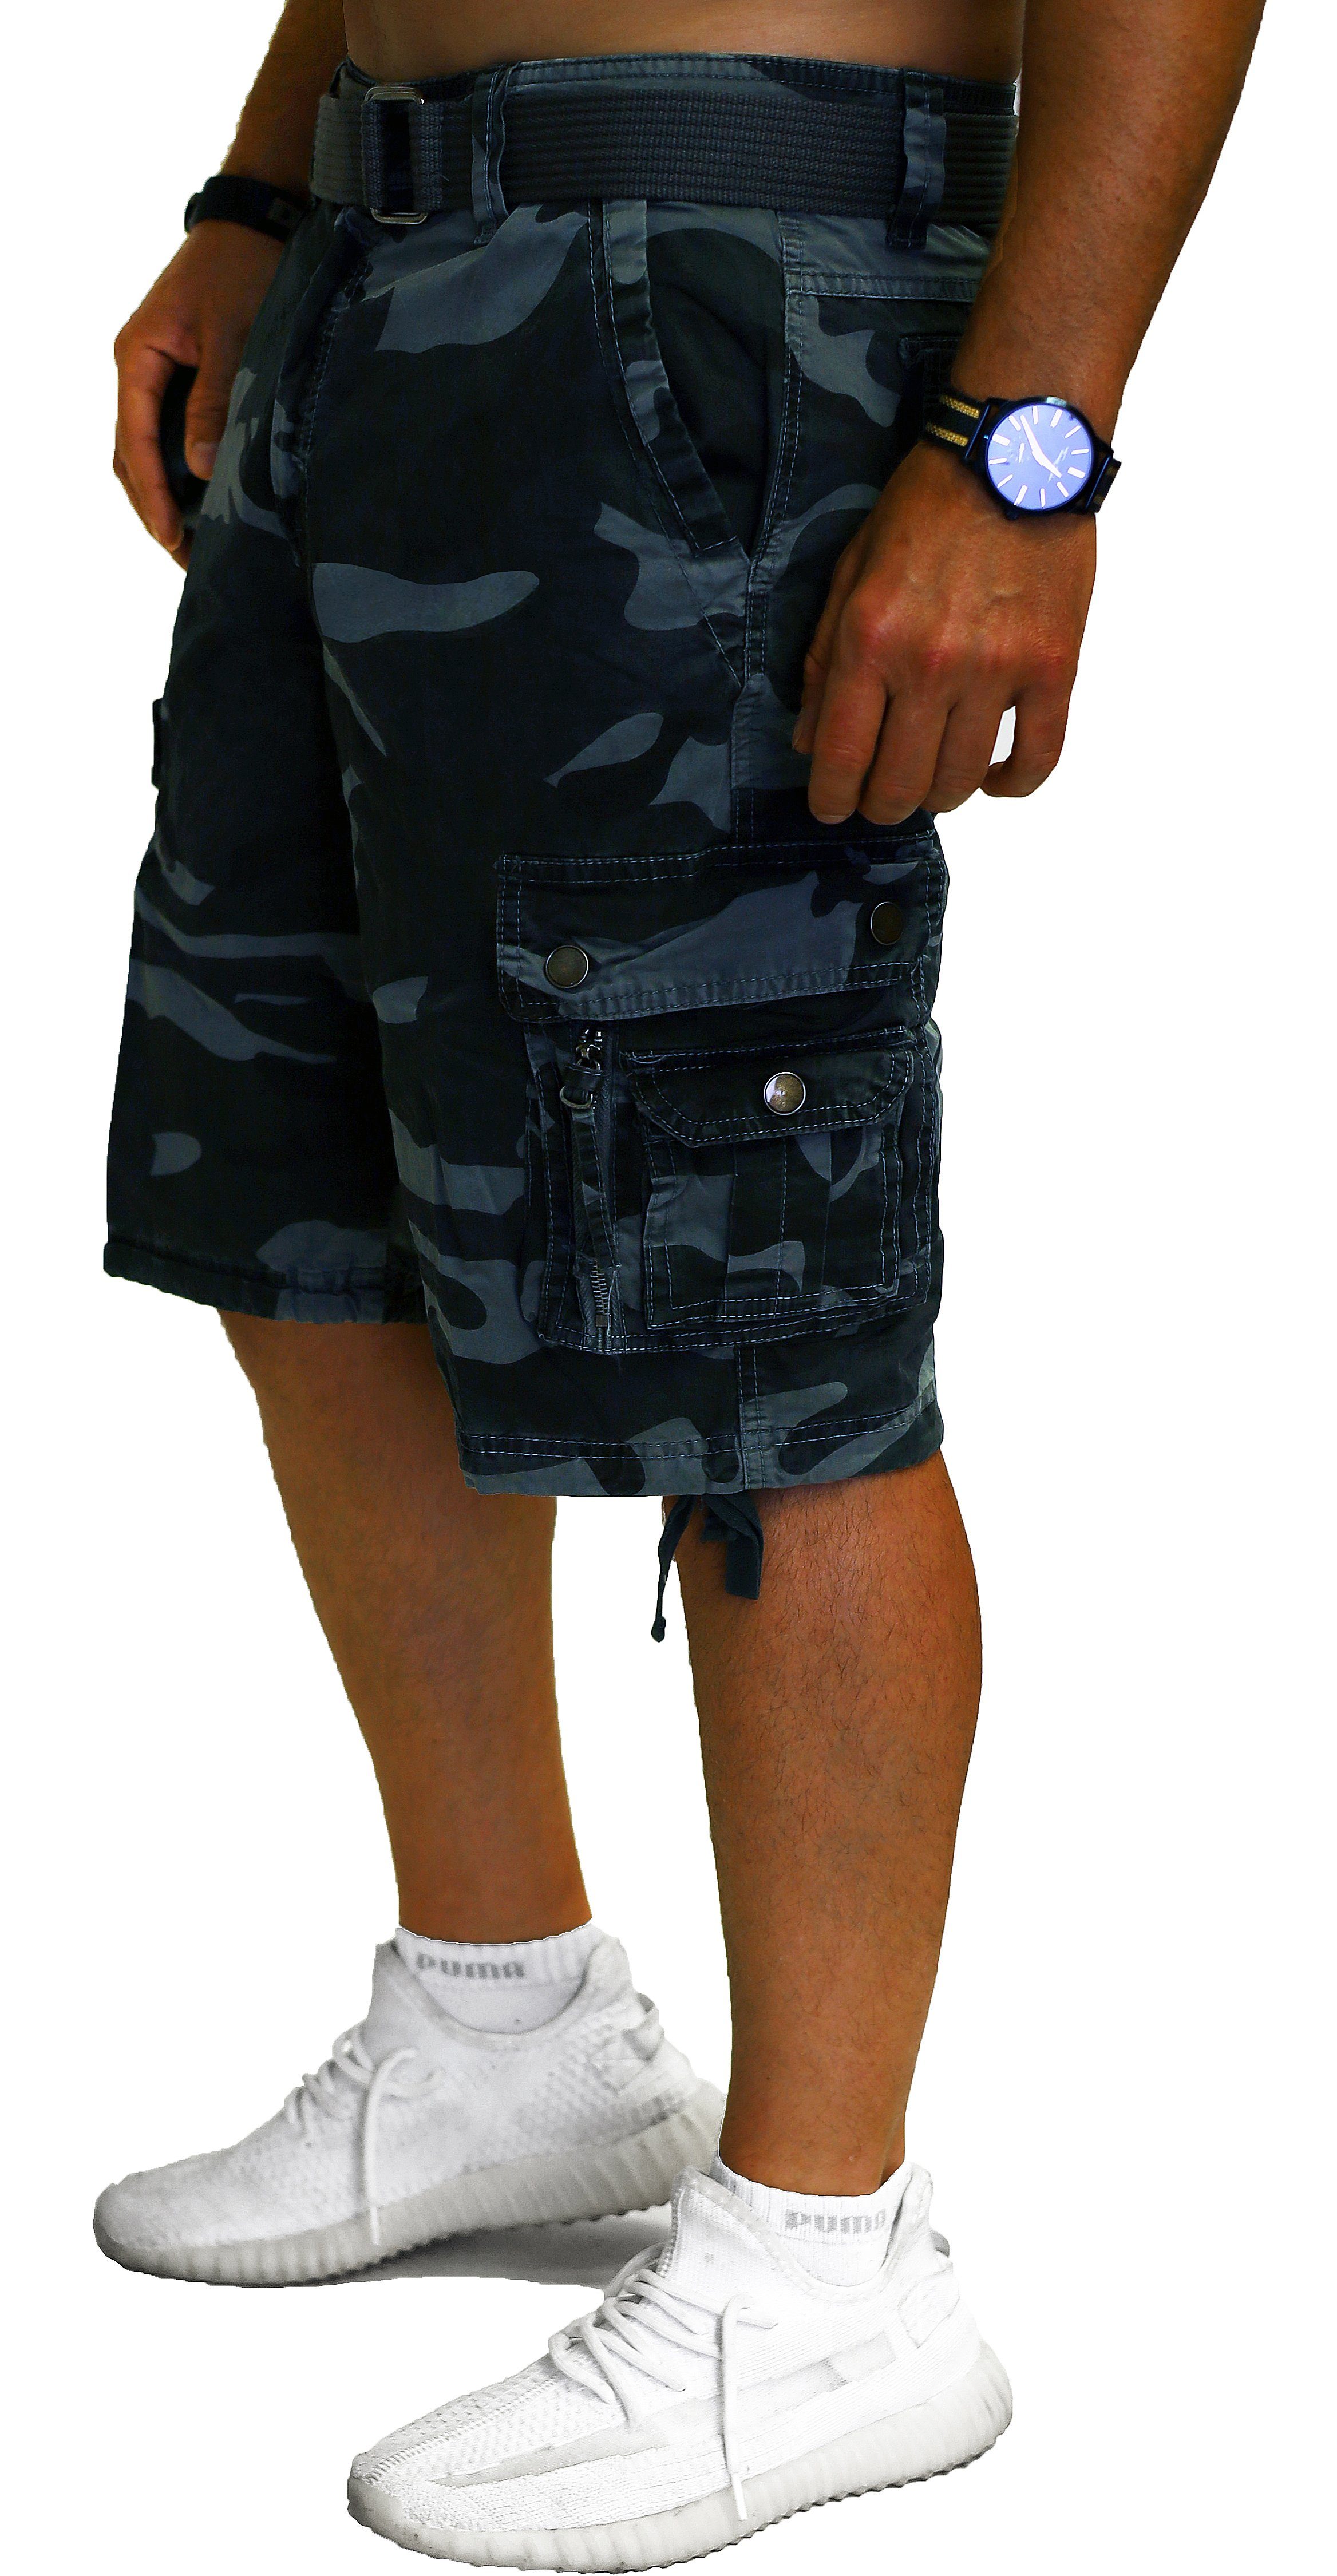 RMK Cargoshorts Tarn in Short Gürtel Cargo Army Shorts kurze Set + Hose aus Camouflage, Camou-Grau mit Baumwolle, Gürtel Bermuda Herren